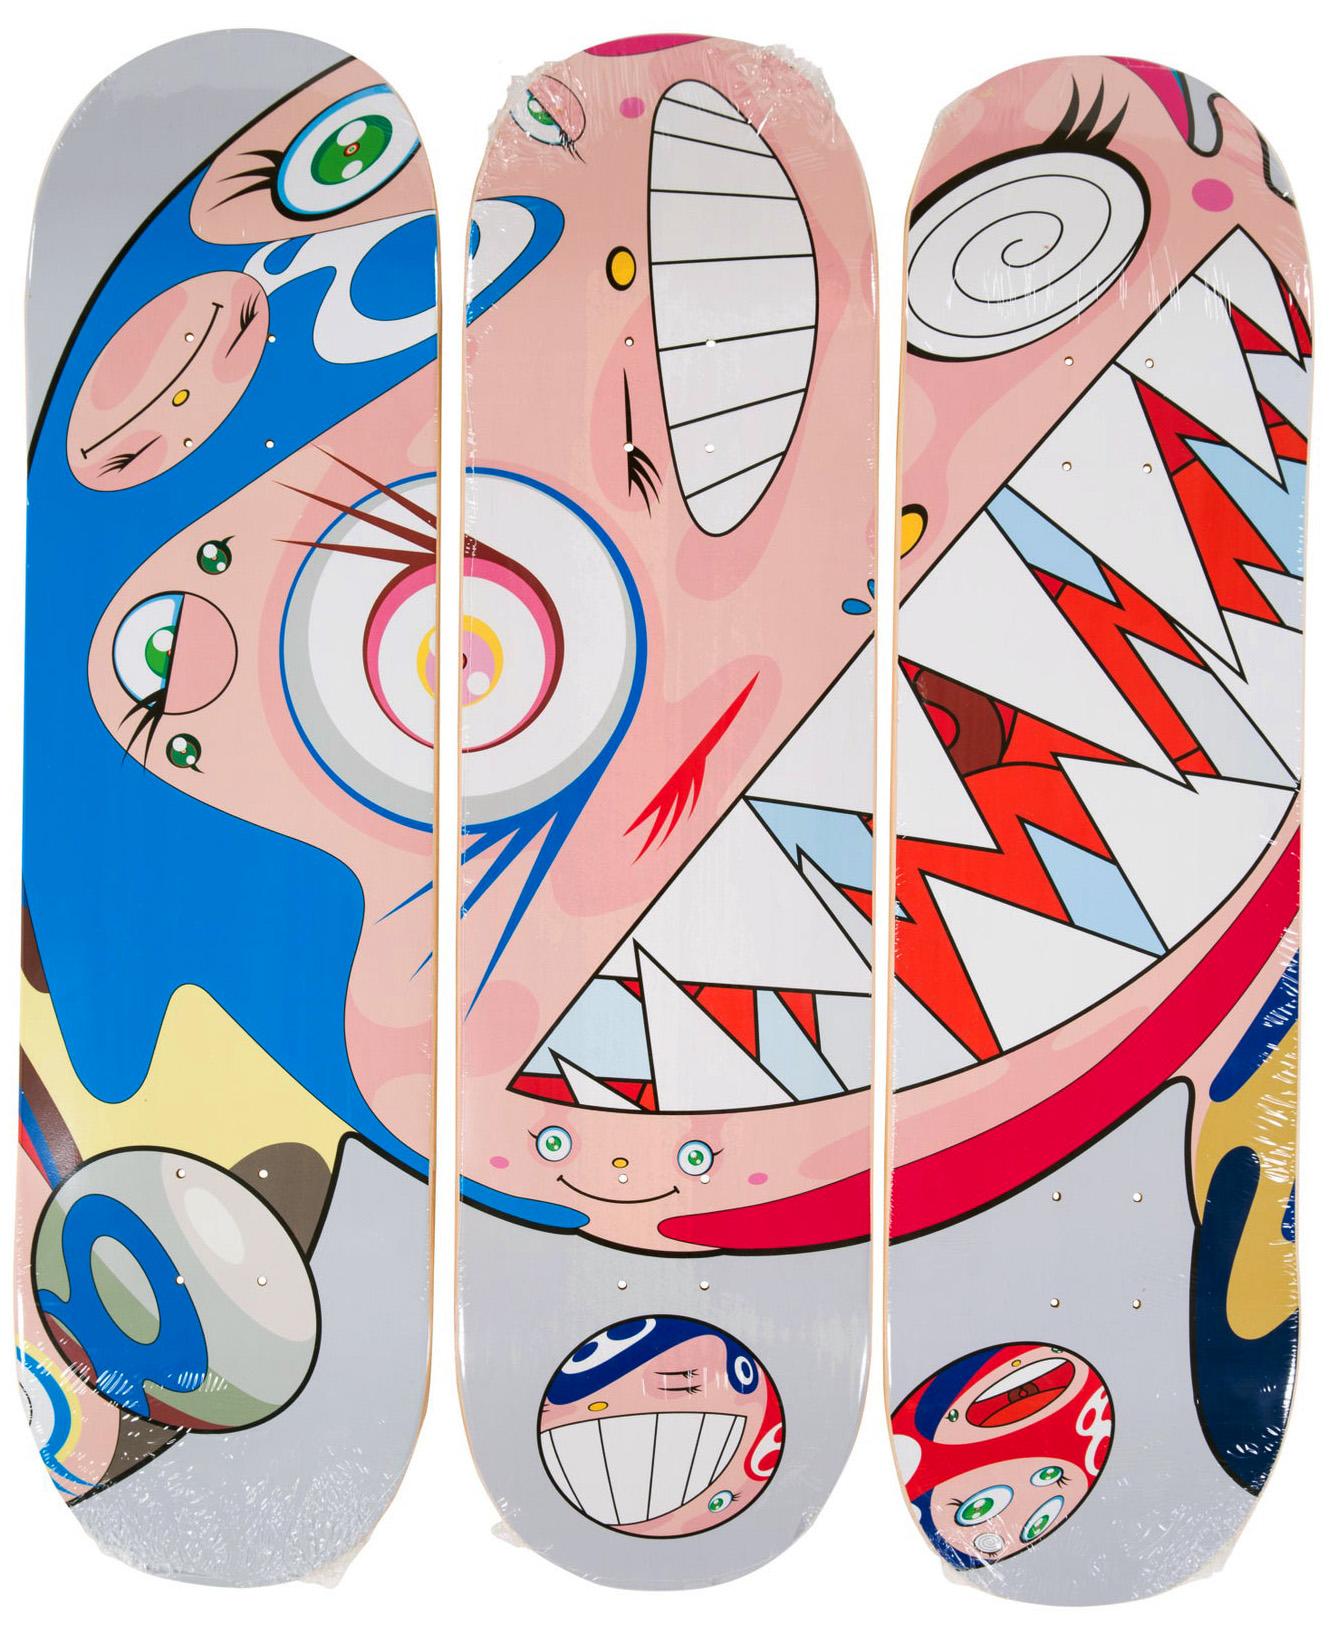 Takashi Murakami DOB Skateboard Deck Triptyque 2018 :
Un ensemble/triptyque de skateboard de Takashi Murakami très décoratif qui constitue une œuvre d'art murale unique et vibrante qui s'accroche facilement. Les œuvres représentent le personnage de